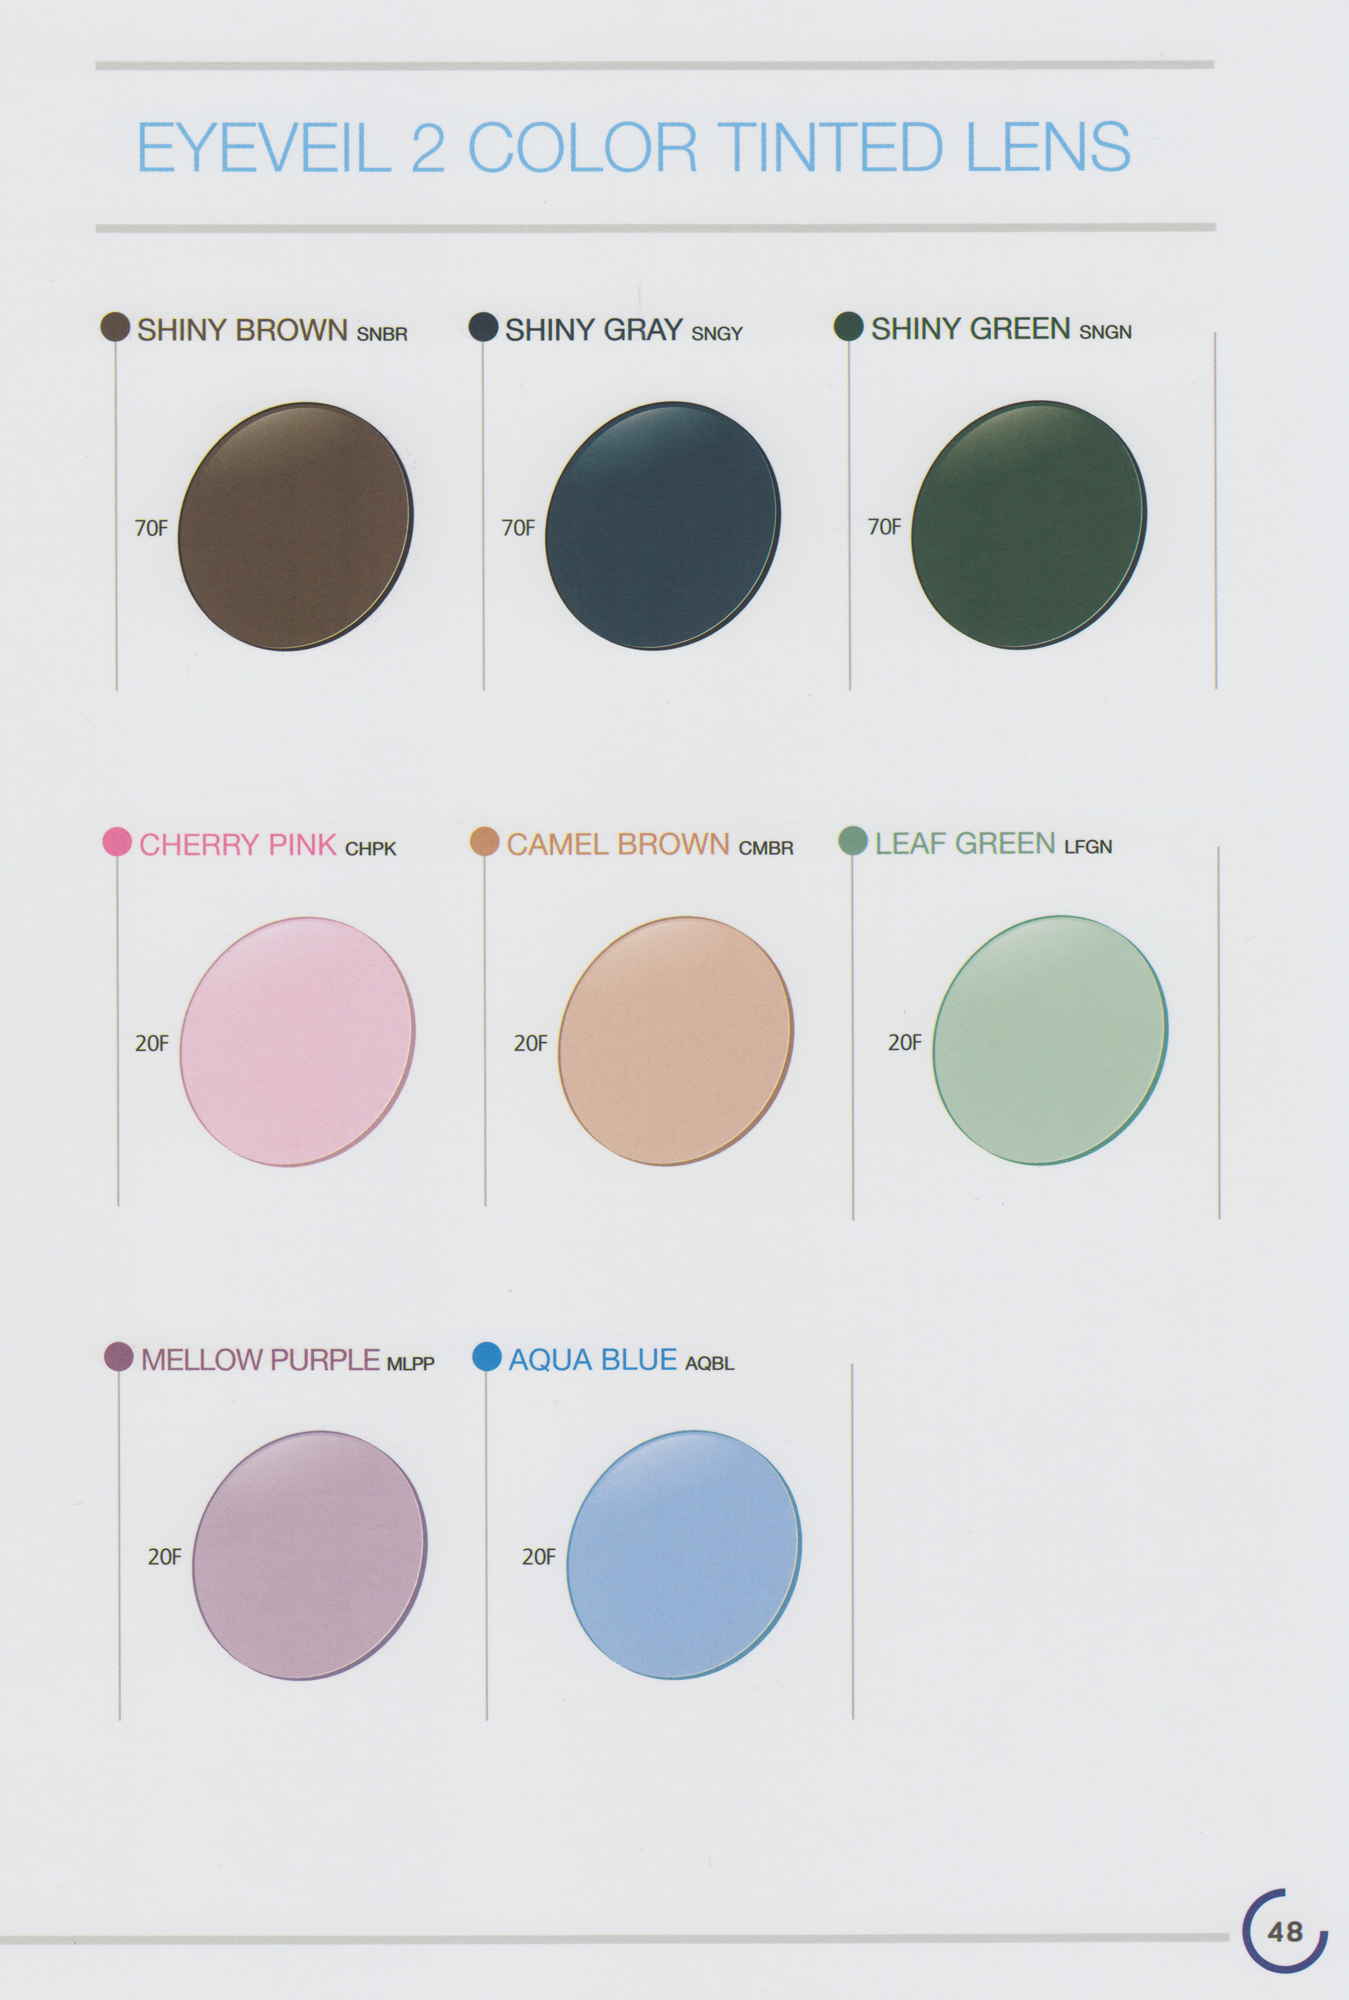 Hoya Lens Color Chart